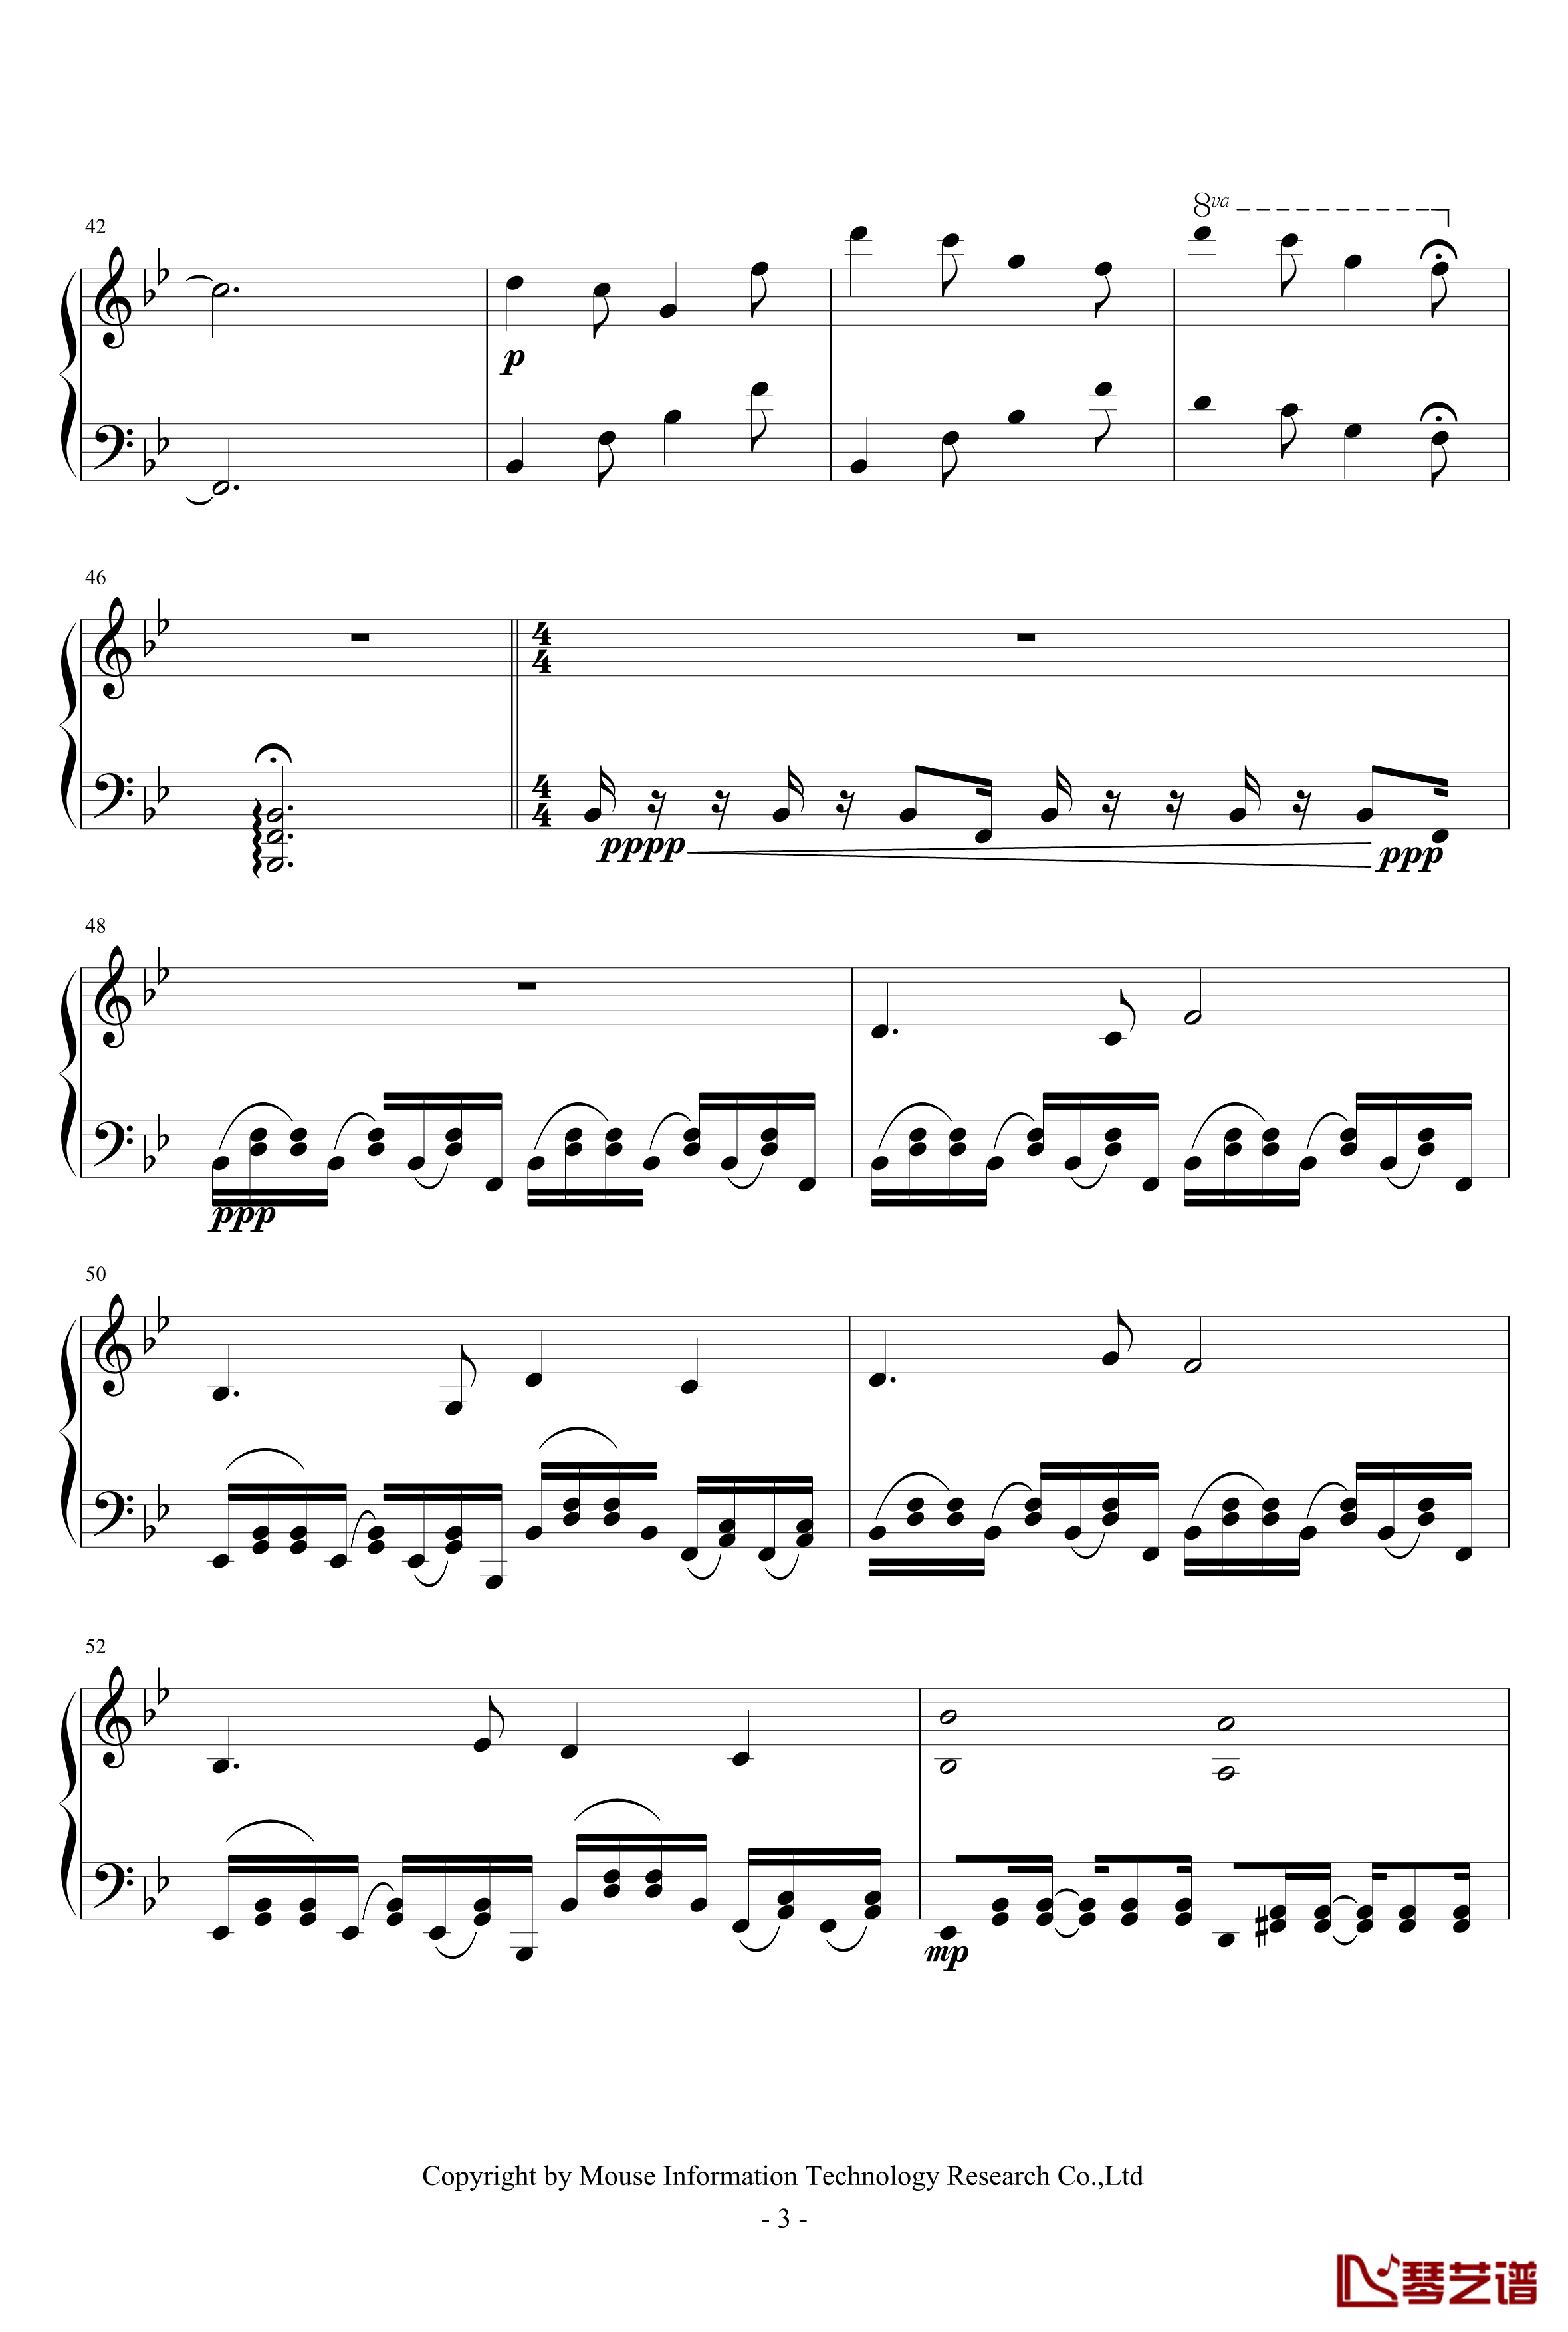 Alpha钢琴谱-0xffff-C4183